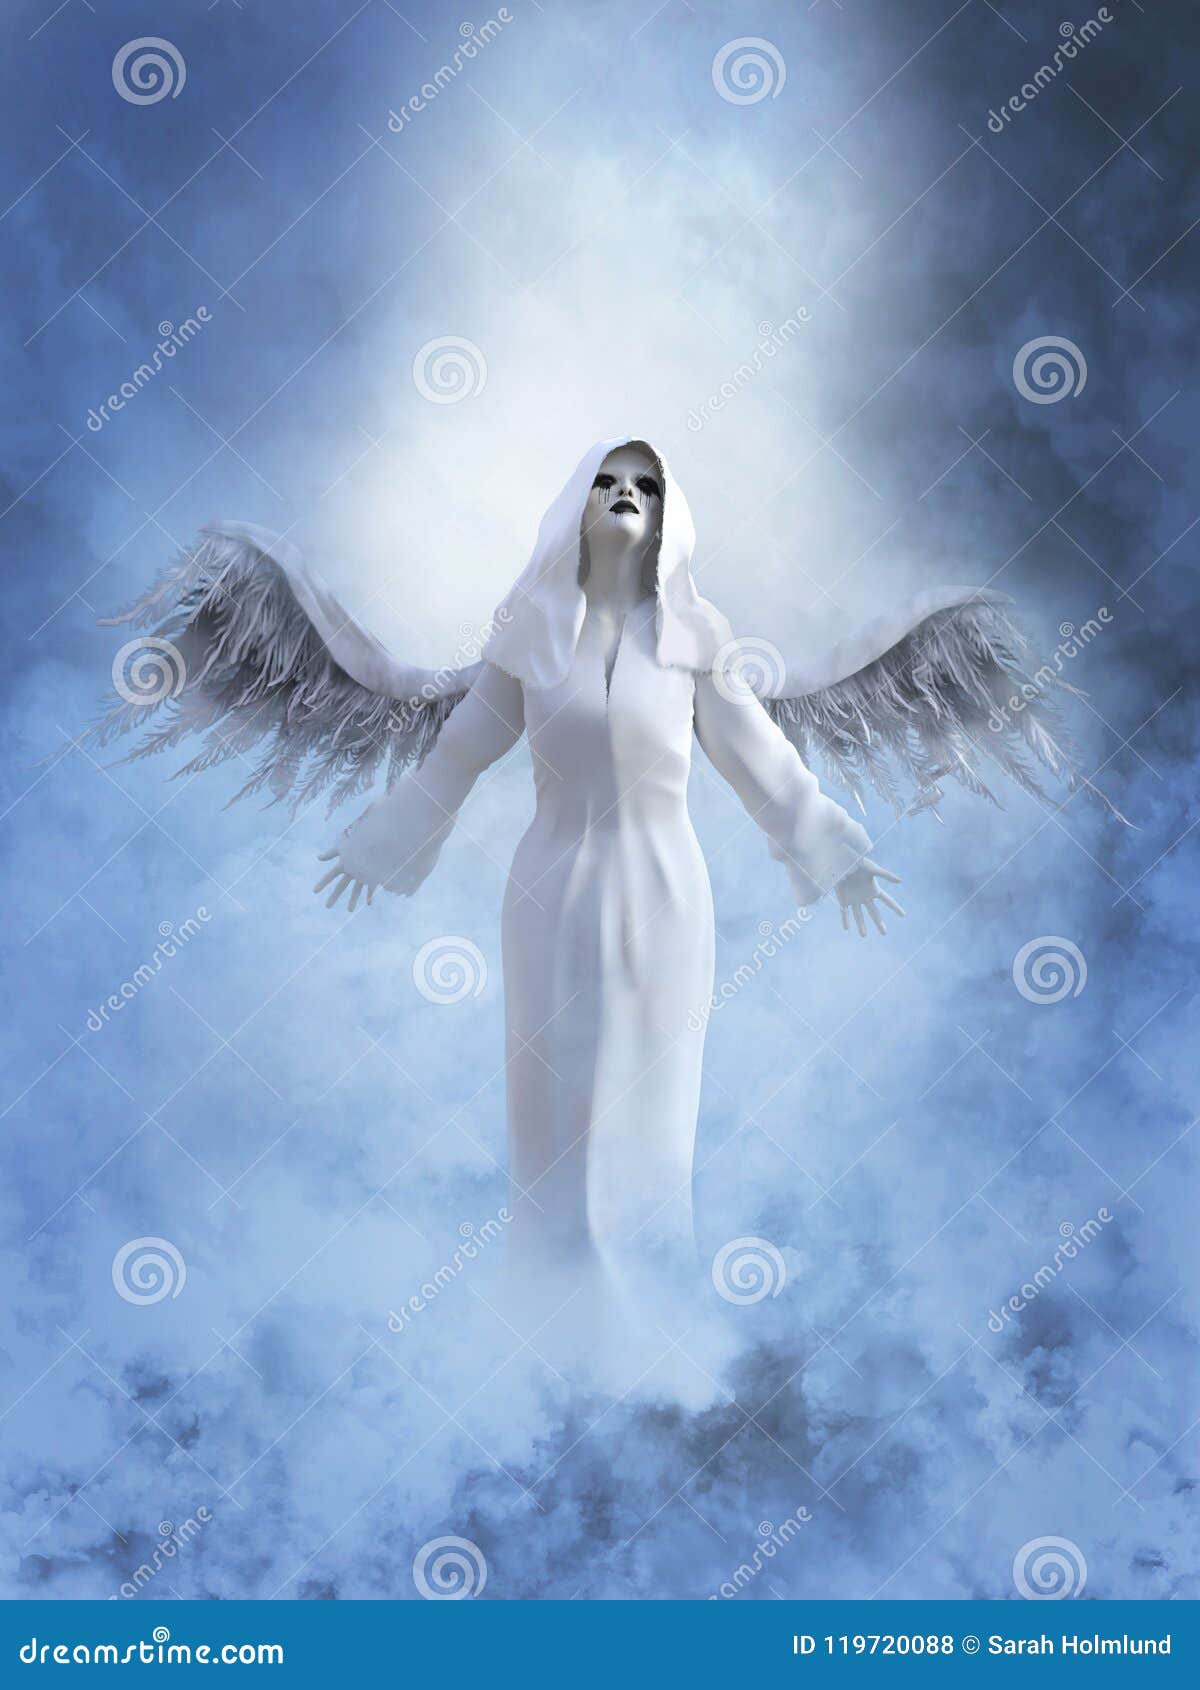 Rendição 3D De Um Anjo Branco No Céu Ilustração Stock - Ilustração de anjo,  céu: 119720088